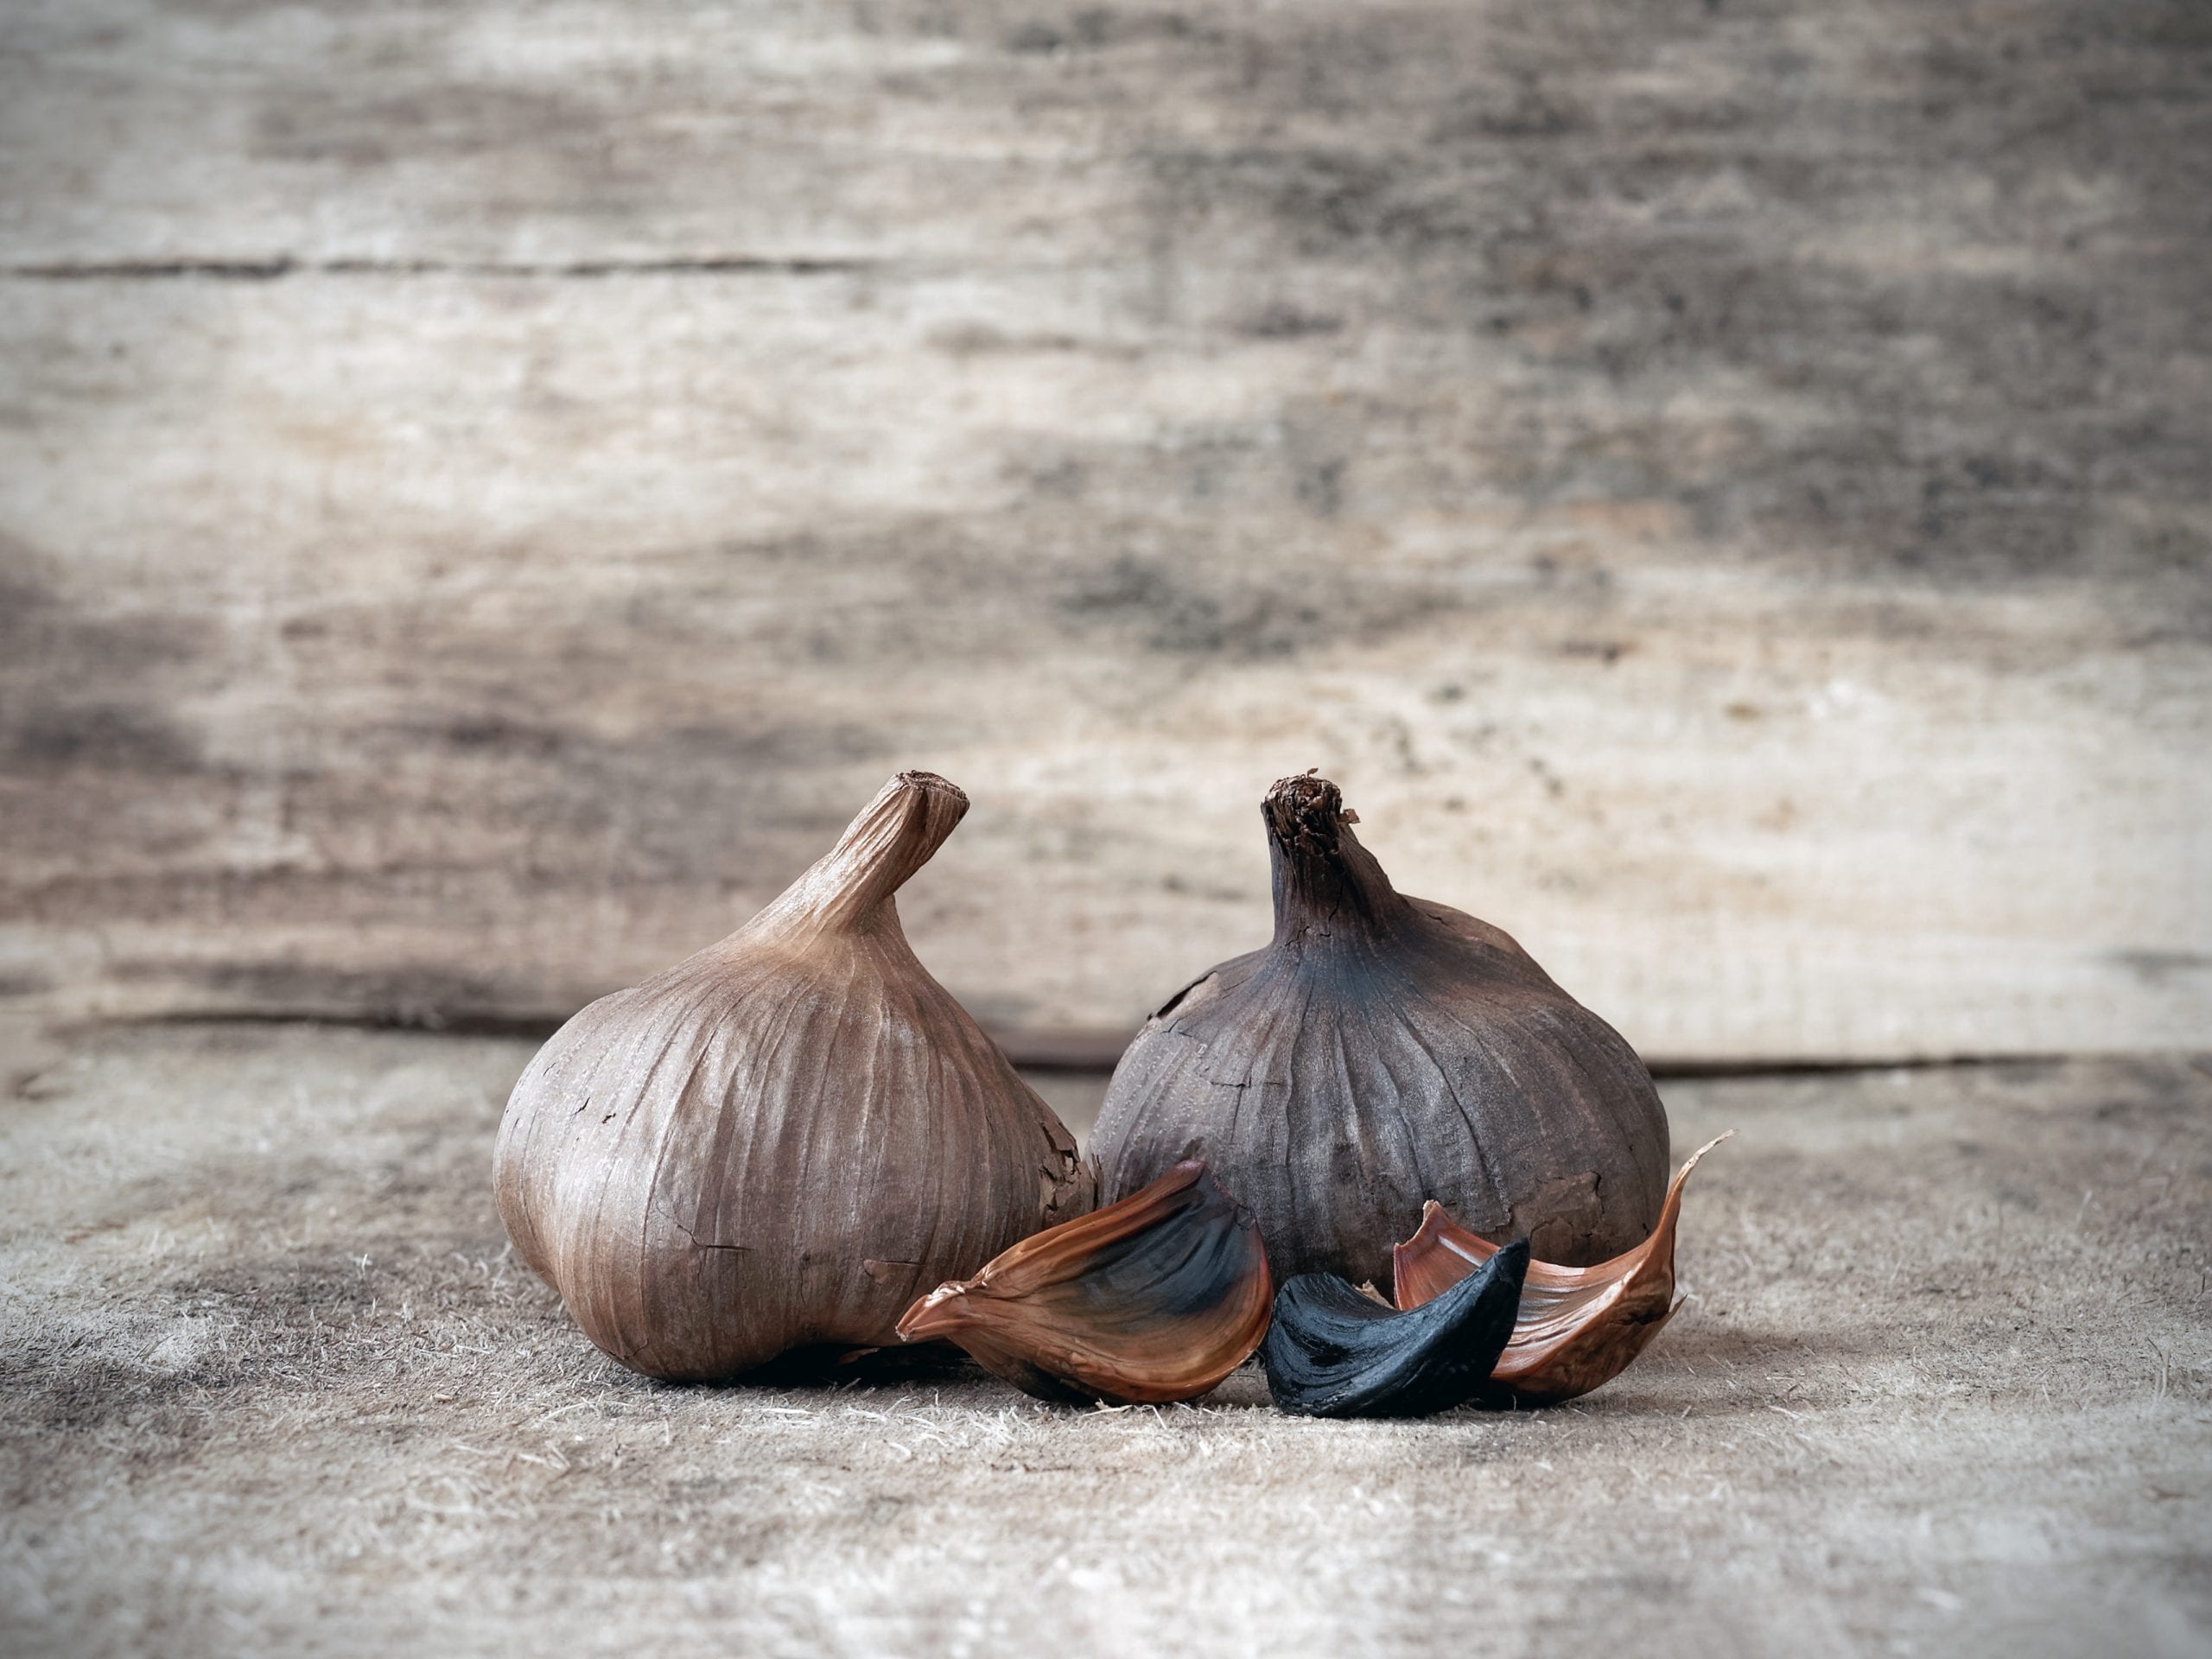 NeroFermento, la start up che produce aglio nero - Gambero Rosso